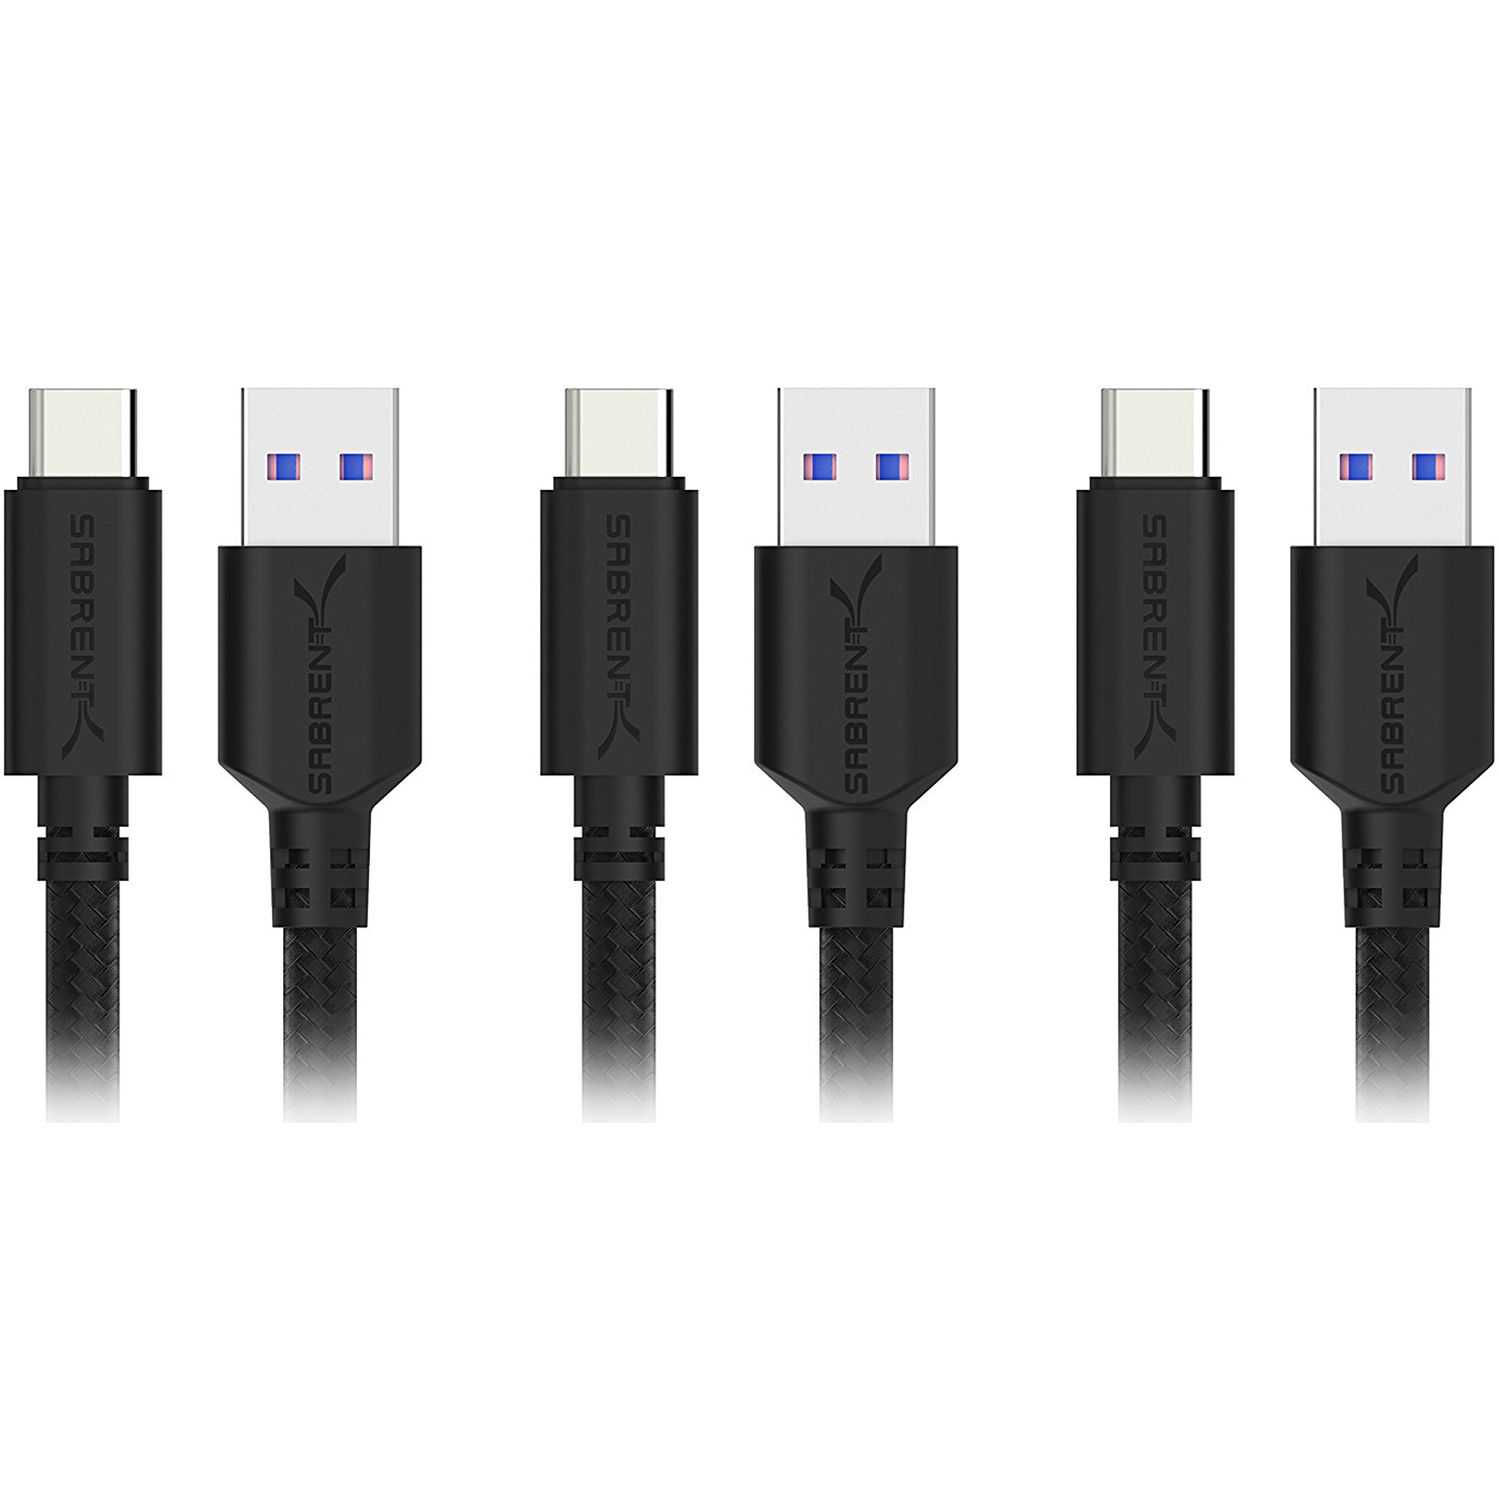 Usb 2.0 usb 3.2 gen1. USB 3.2 gen2 Type-c. USB 3.2 gen1 Micro-b. USB C 3.2 gen1. USB Gen Type 3.0 кабель c 750.